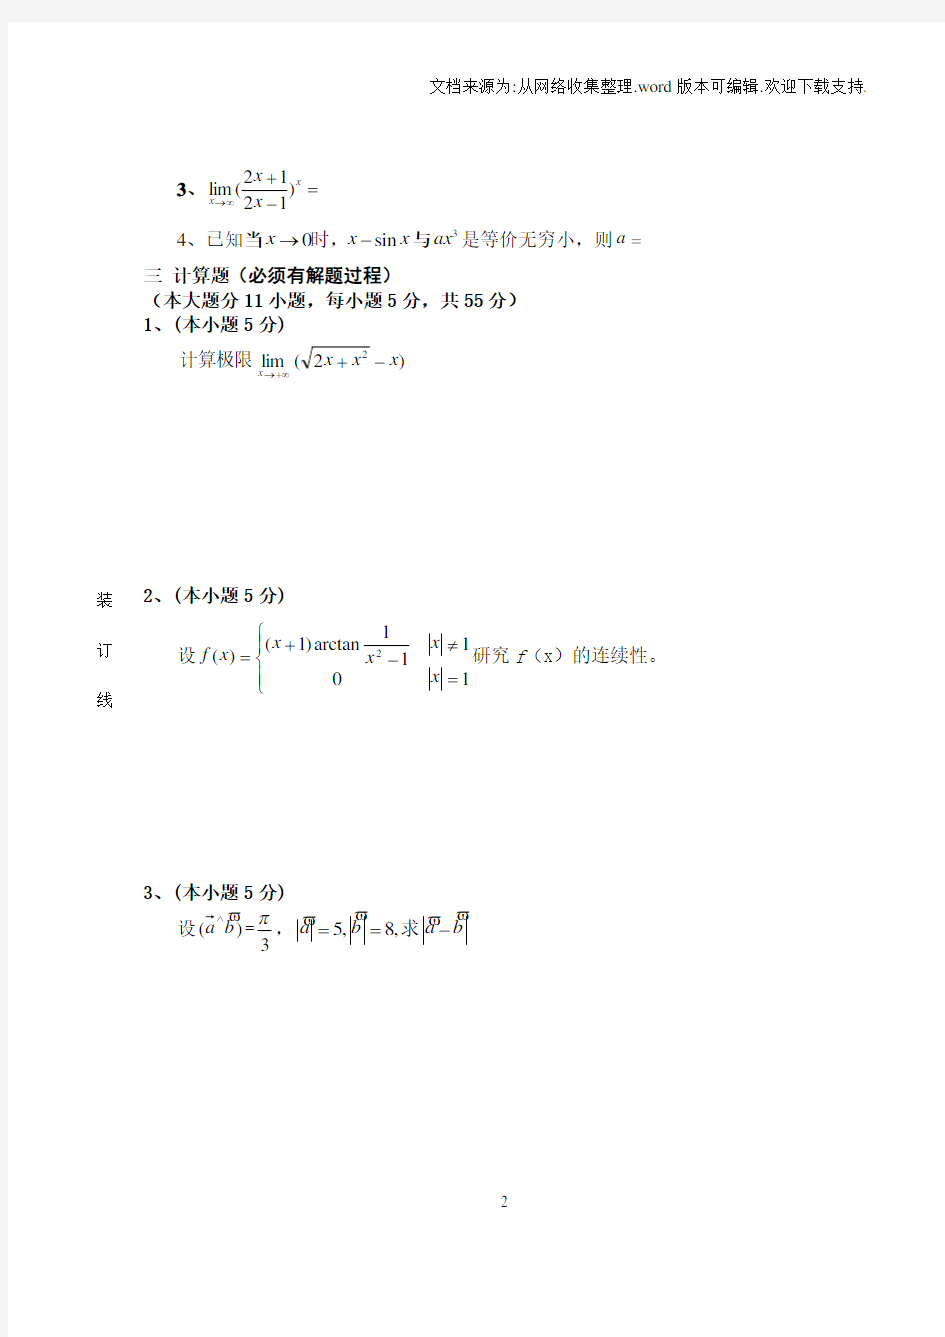 高等数学试卷与答案第一学期期末考试上海海事大学高等数学A船(A)